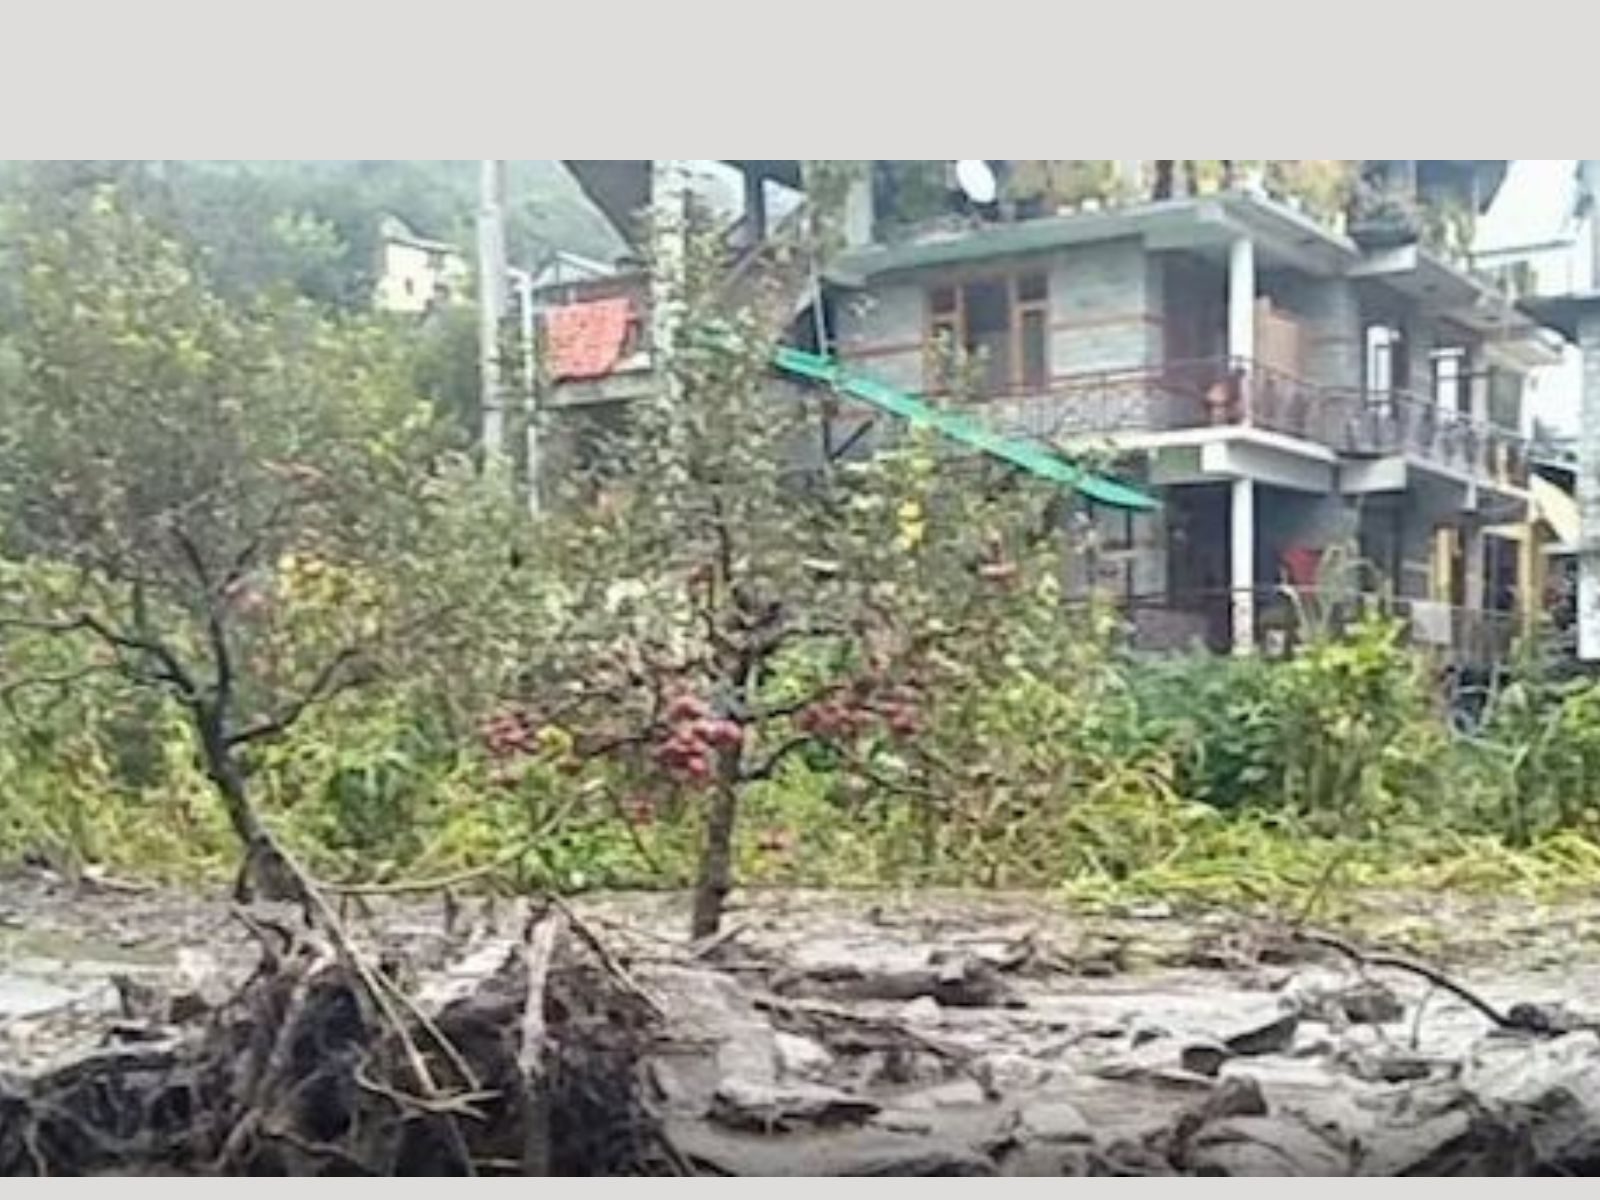 Himachal:  ਸਿਰਮੌਰ 'ਚ ਢਿੱਗਾਂ ਡਿੱਗਣ ਕਾਰਨ ਮਕਾਨ ਢਹਿ-ਢੇਹੀ, 4 ਨਾਬਾਲਗ ਬੱਚਿਆਂ ਸਣੇ 5 ਦੀ ਮੌਤ (file photo)